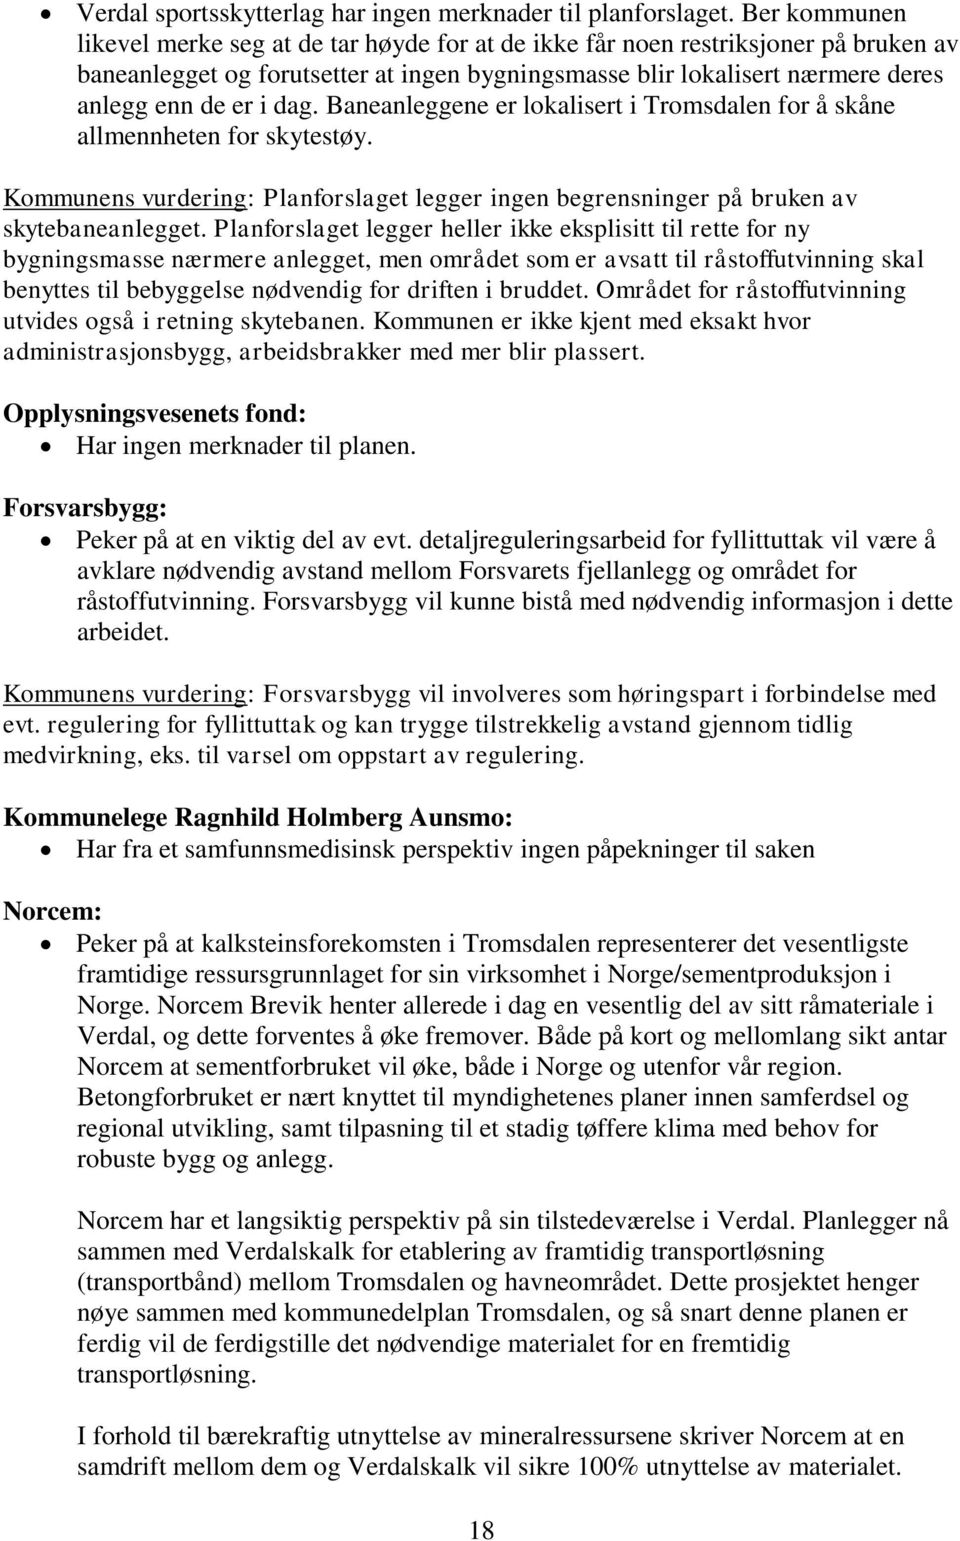 dag. Baneanleggene er lokalisert i Tromsdalen for å skåne allmennheten for skytestøy. Kommunens vurdering: Planforslaget legger ingen begrensninger på bruken av skytebaneanlegget.